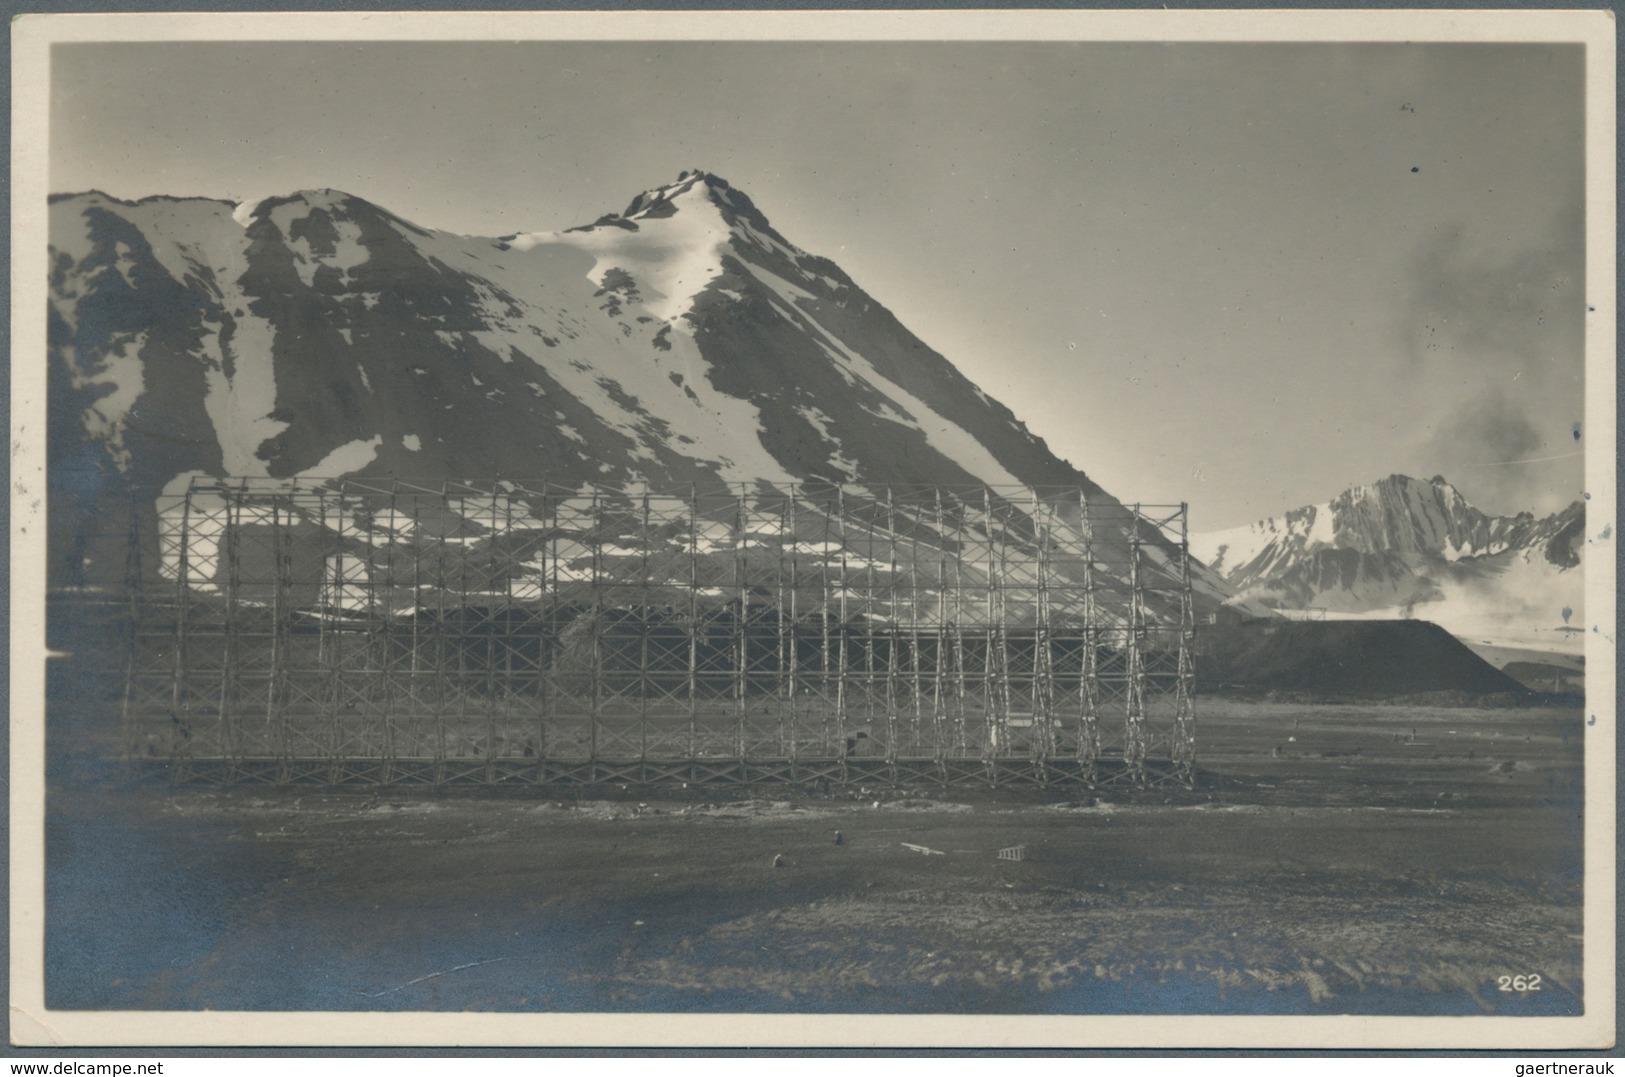 Norwegen: 1928/65 sechs Karten mit Motiven Spitzbergen, dabei Schweizer Expeditionskarte mit Untersc